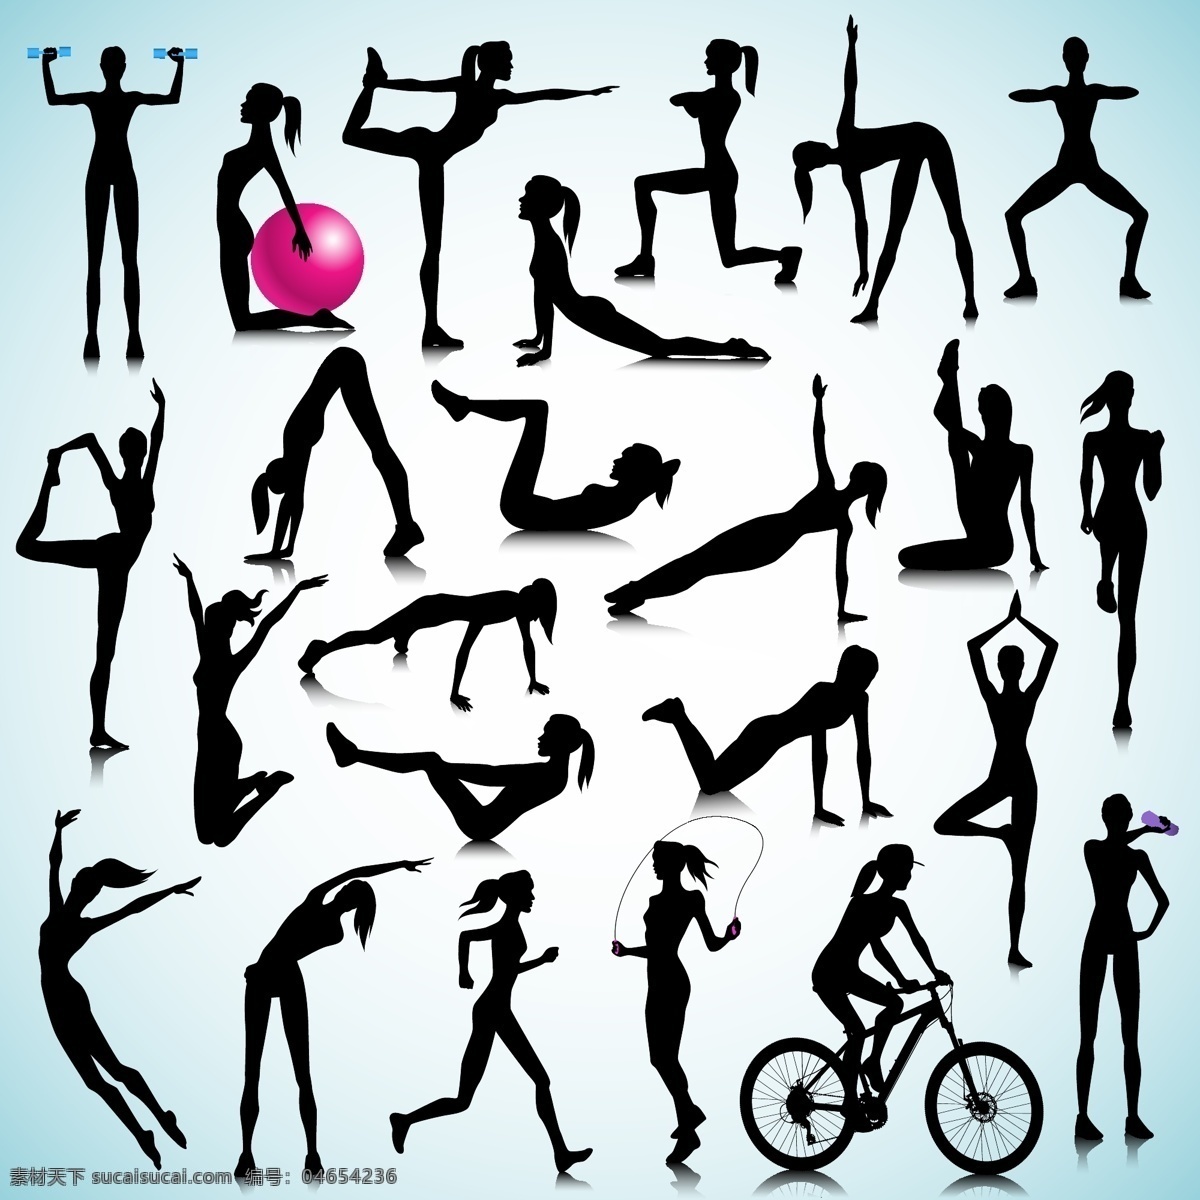 健身 锻炼 健美 瘦身 体操 运动小人 手绘人物 塑身 美体 瑜伽 瑜珈 有氧运动 体育运动 文化艺术